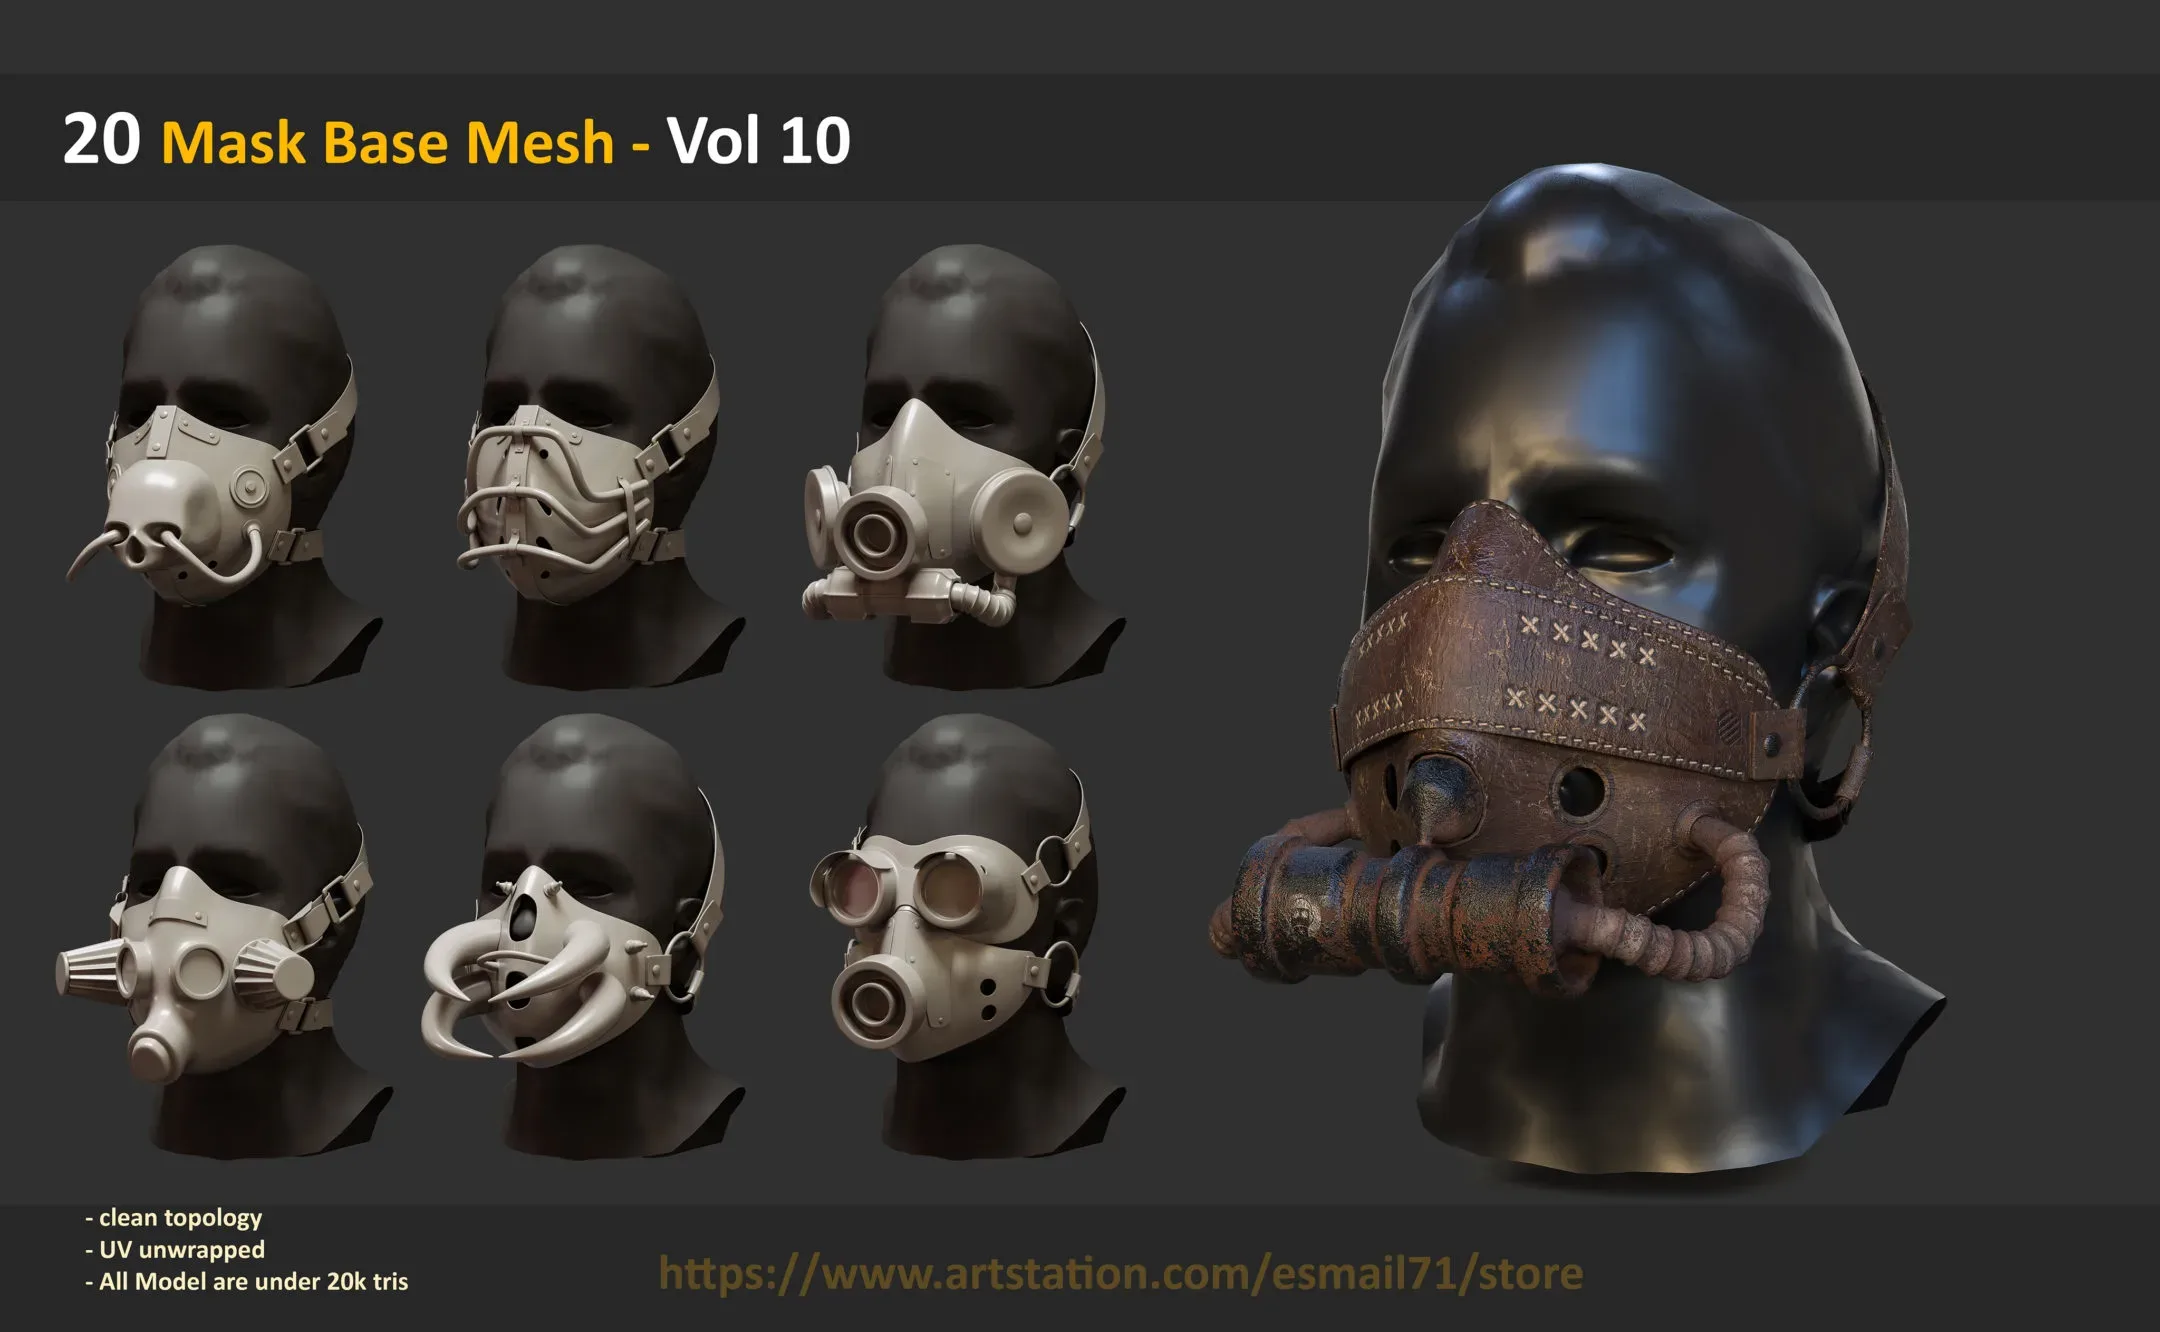 20 Mask Base Mesh - Vol 10